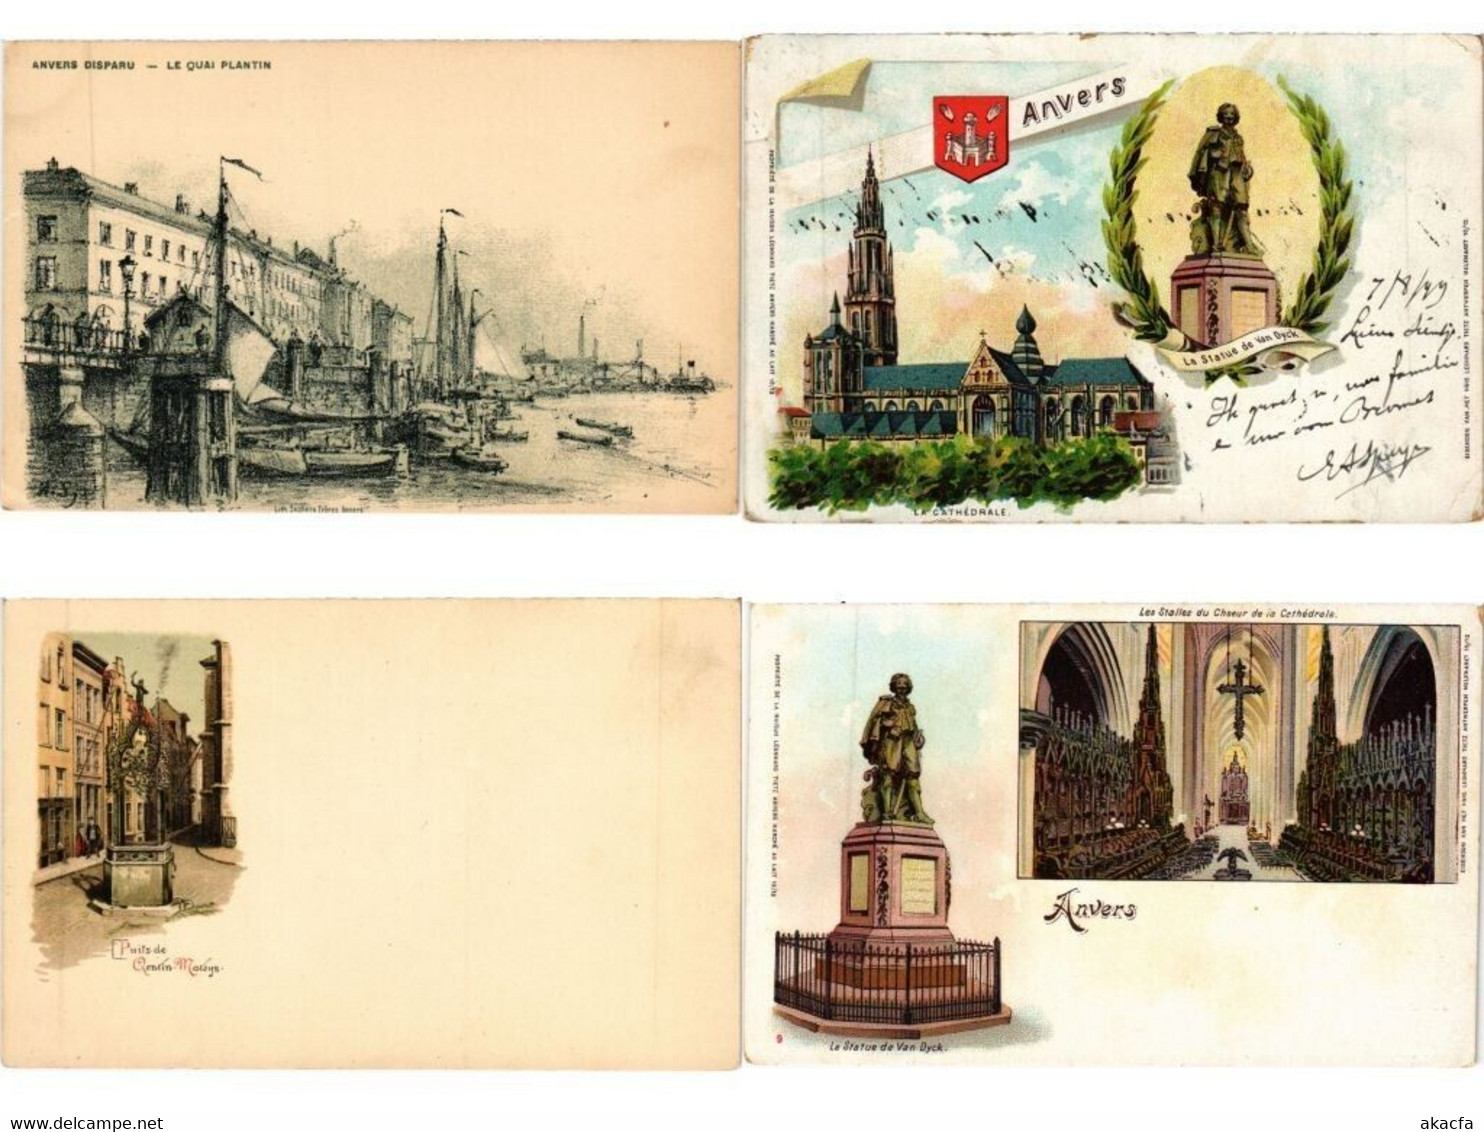 ANTWERP ANVERS ANTWERPEN BELGIUM 1000 Vintage Postcards Mostly pre-1950 (L5569)